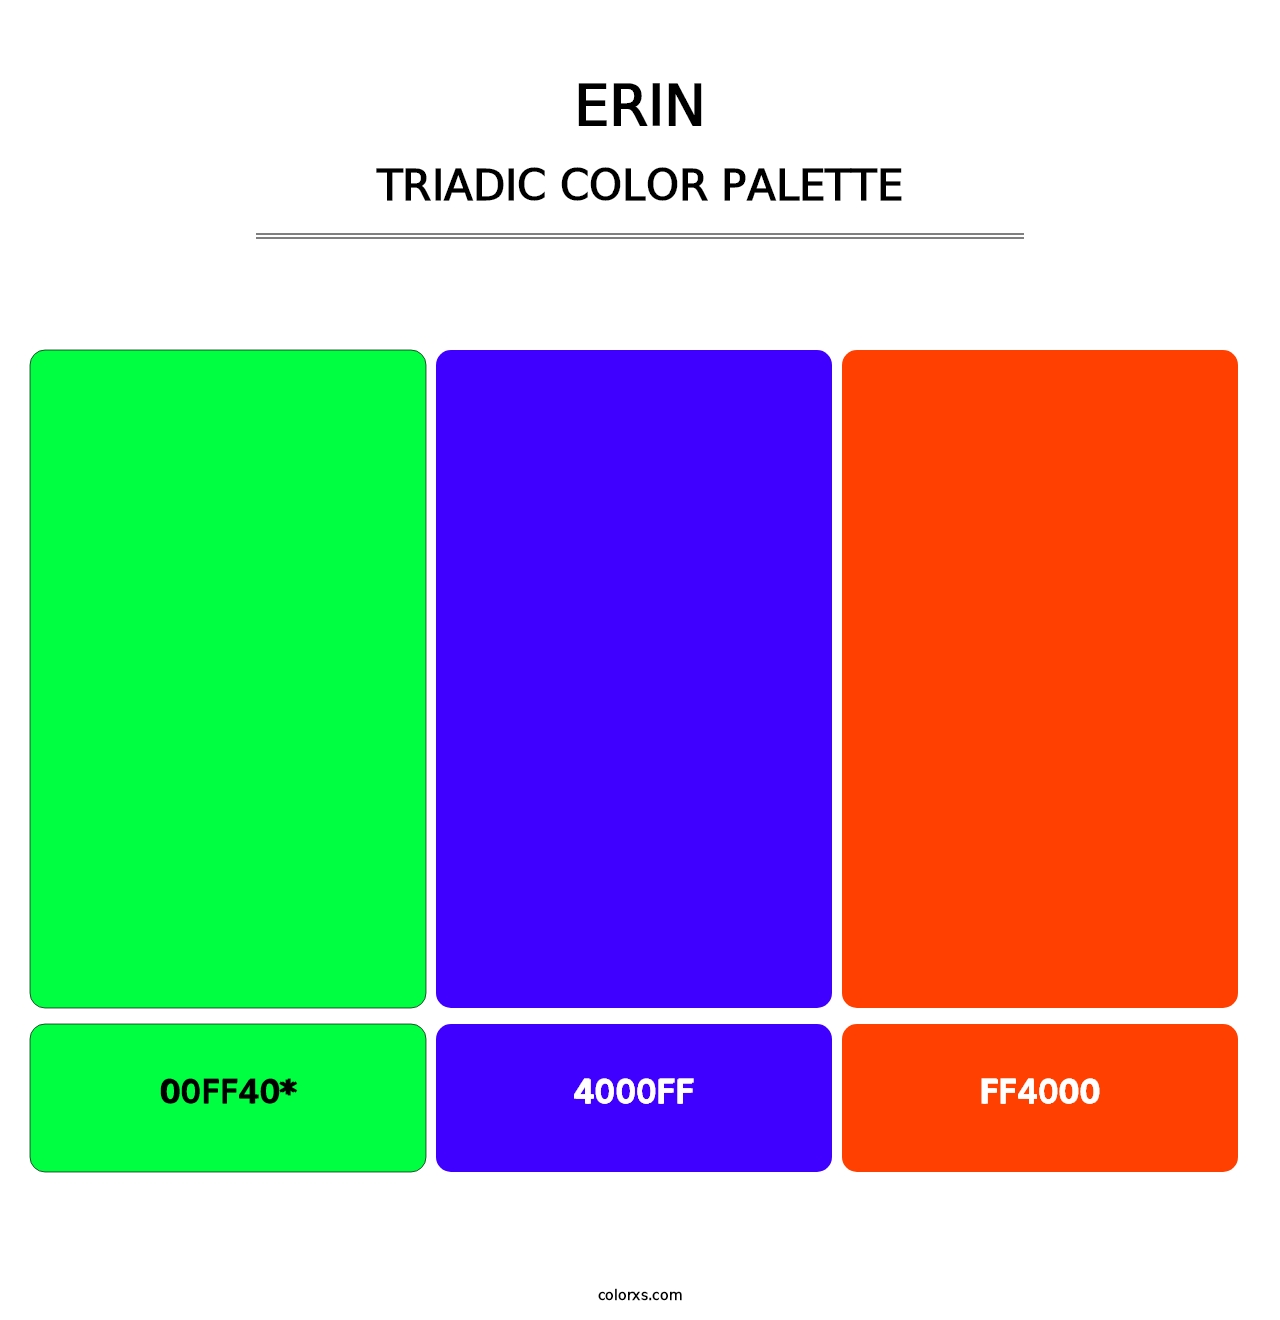 Erin - Triadic Color Palette